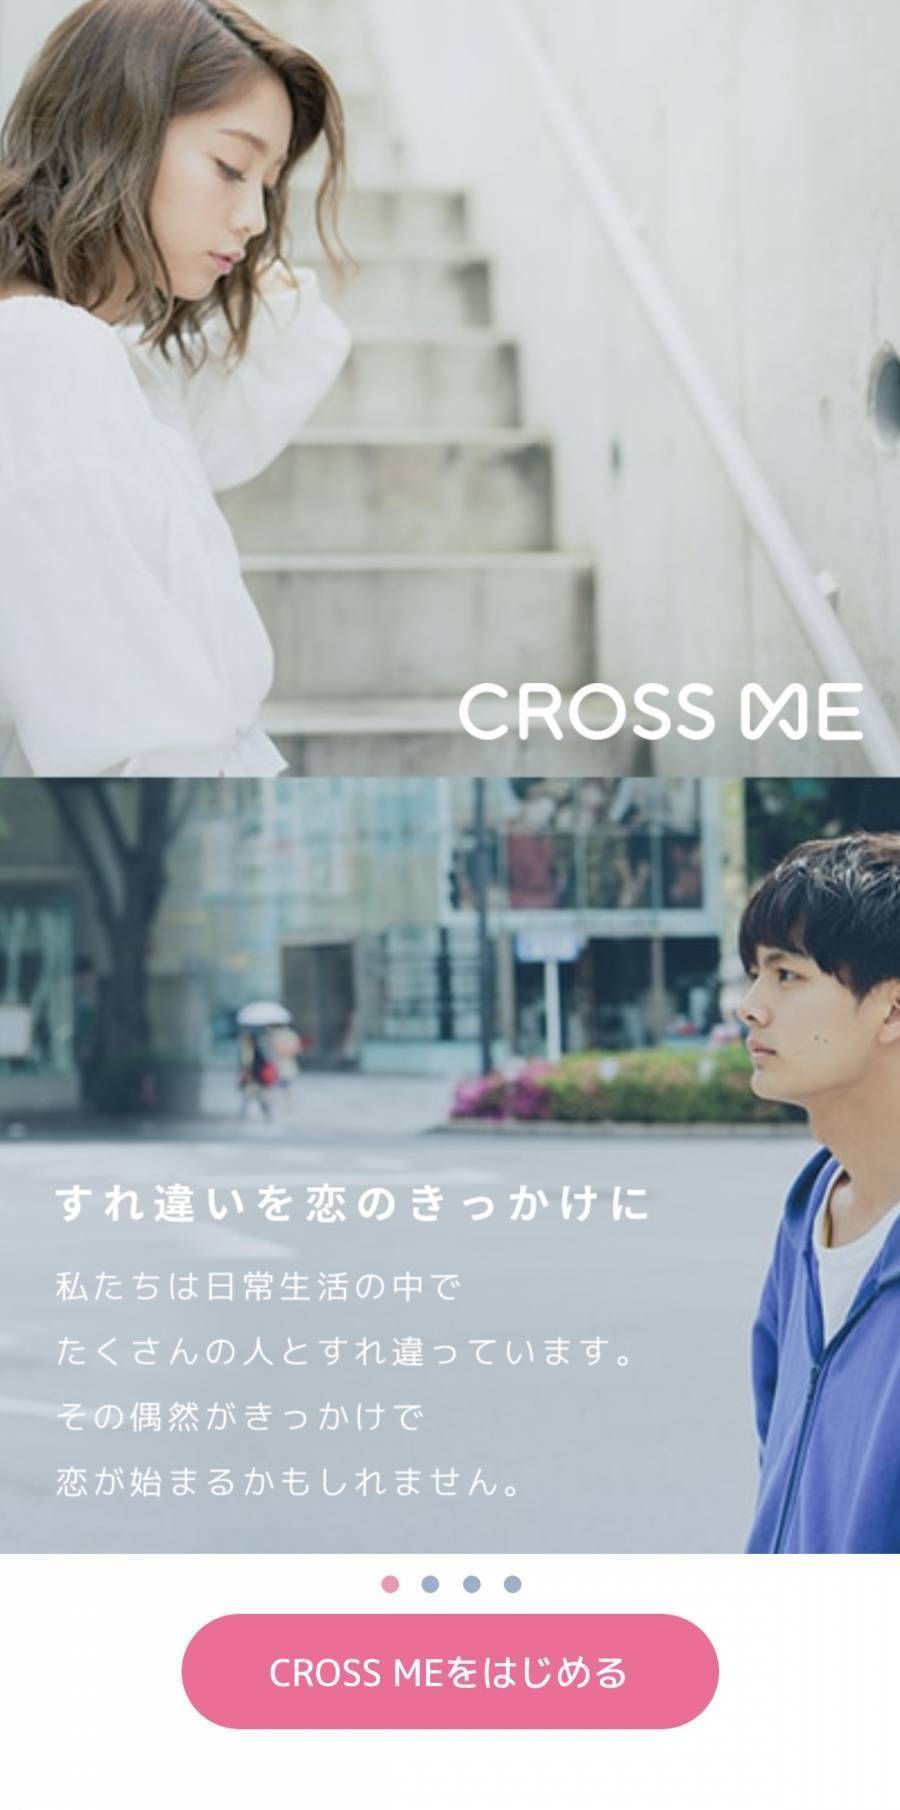 「CROSS ME」の公式サイト画像